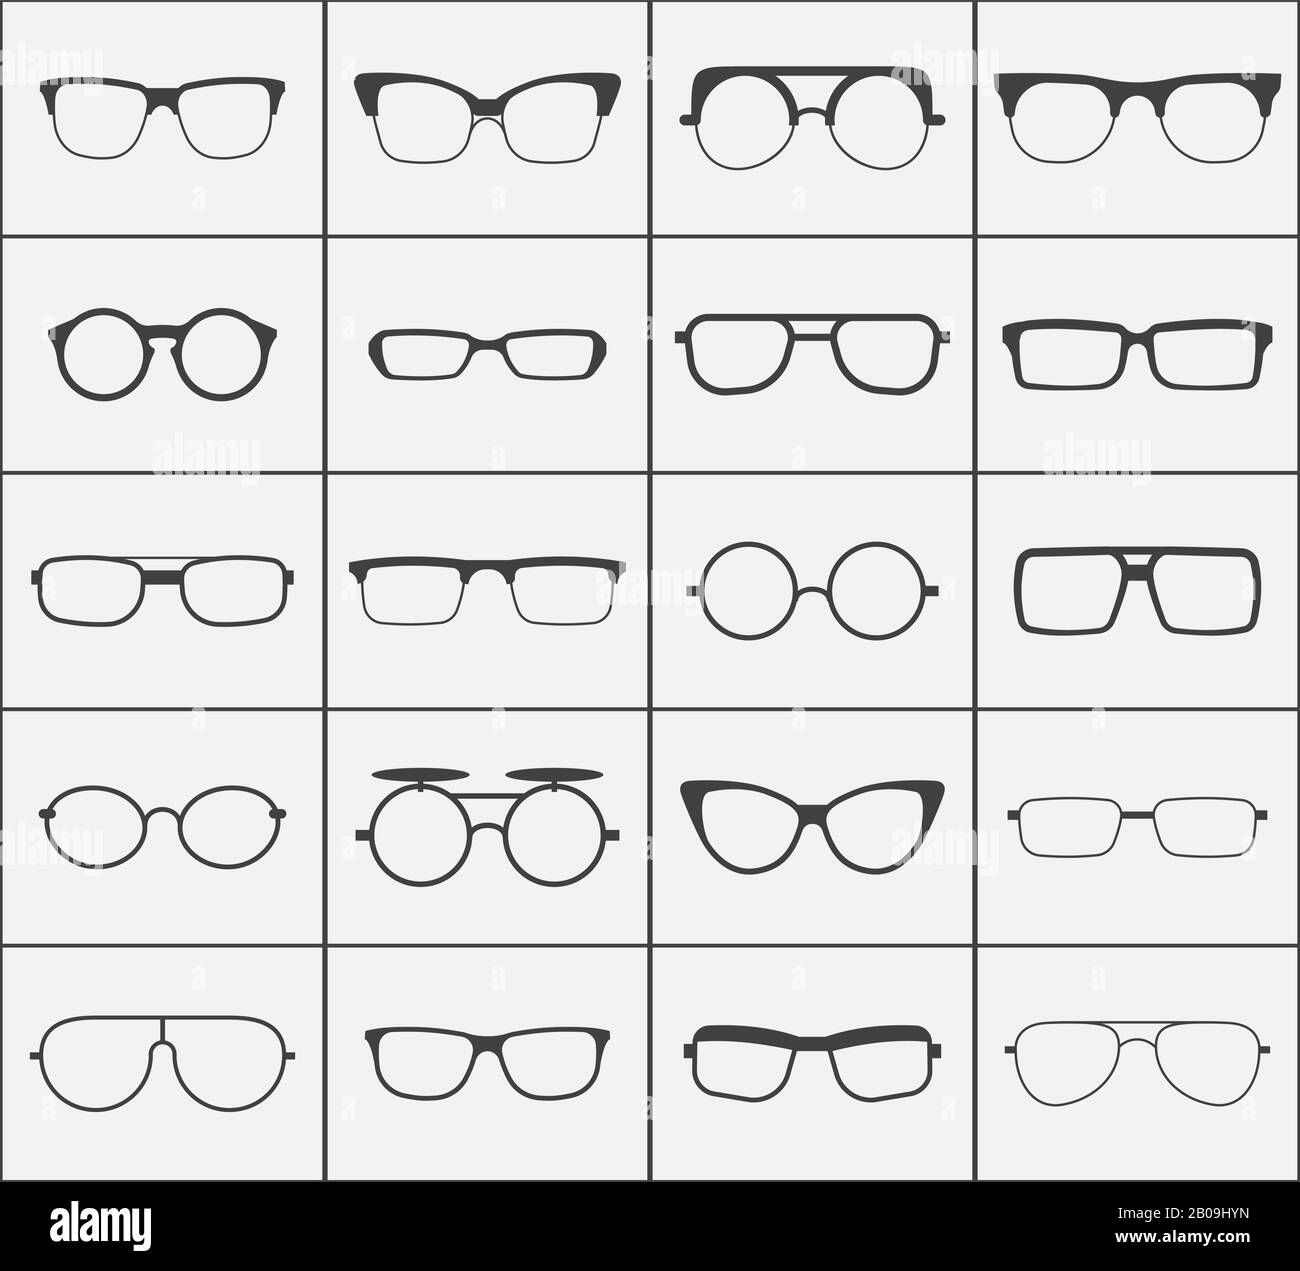 Satz von Vektorgläsern in schwarz über weiß. Kollektion von Hüftbrillen Illustration Stock Vektor